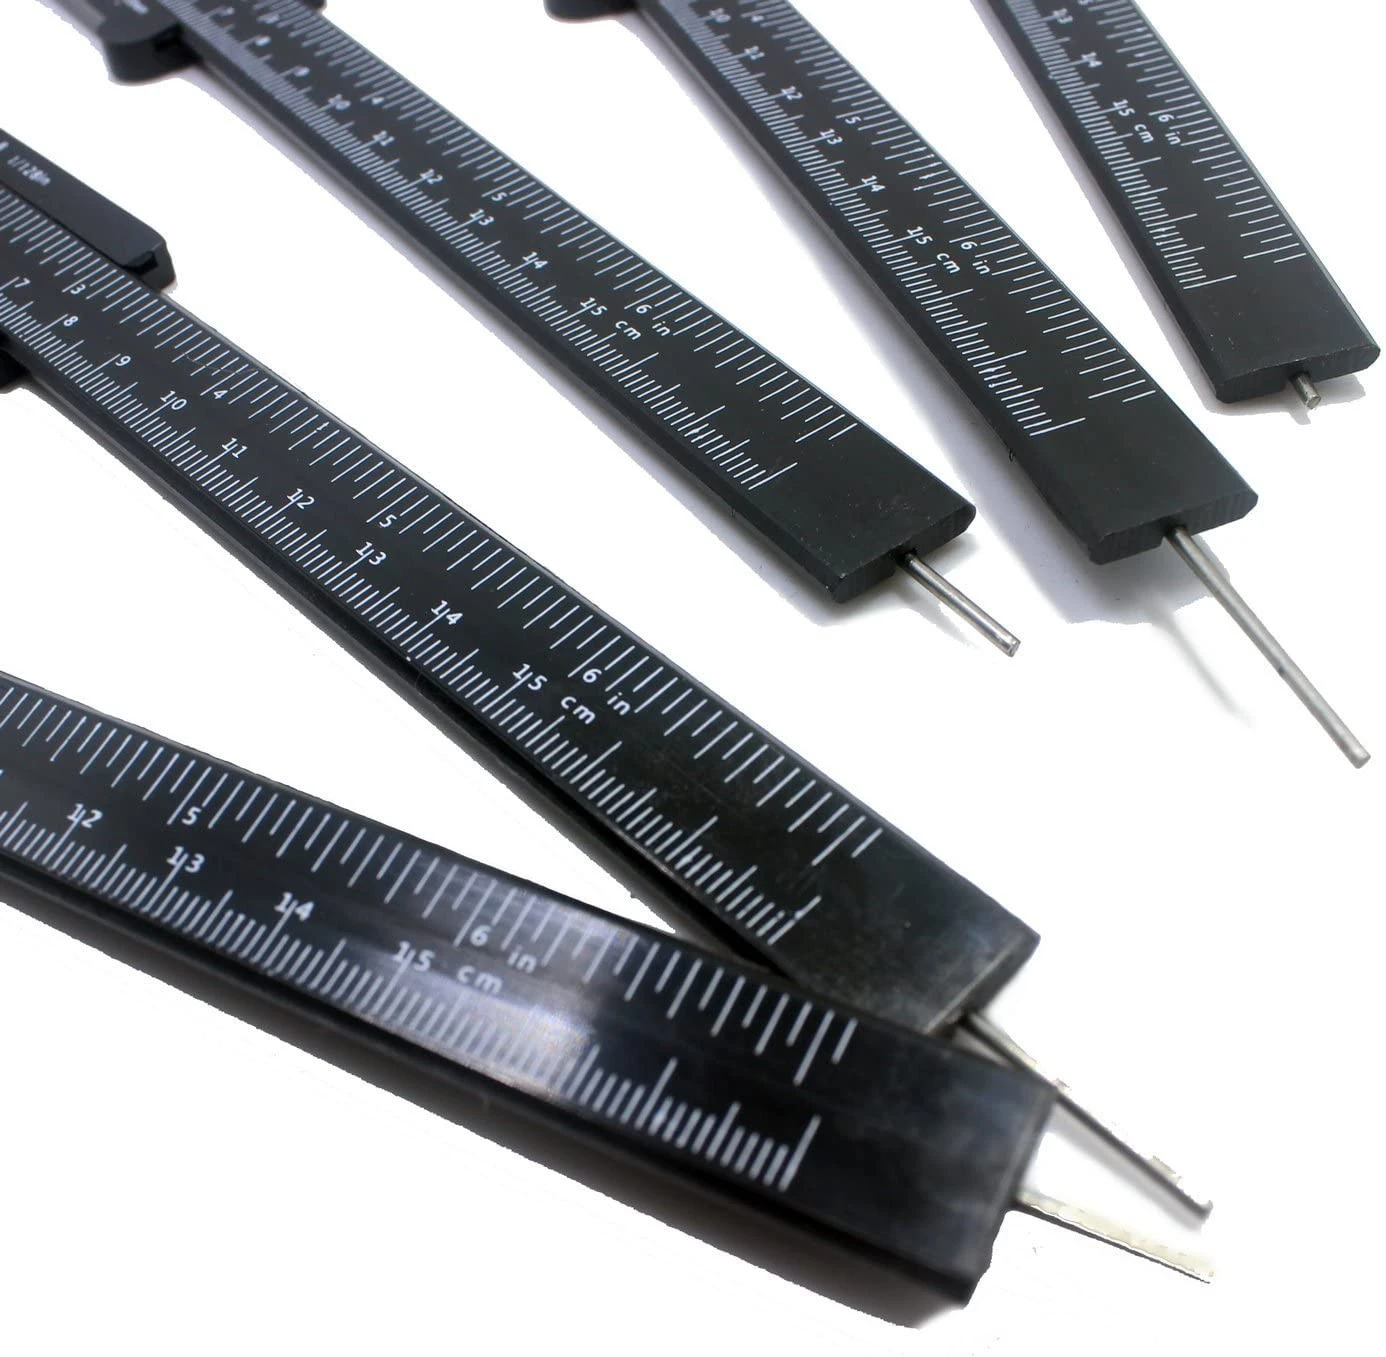 Eyebrow Shaping Plastic Sliding Vernier Caliper Gauge Measure Tool Microblading Ruler Micrometer Measurement